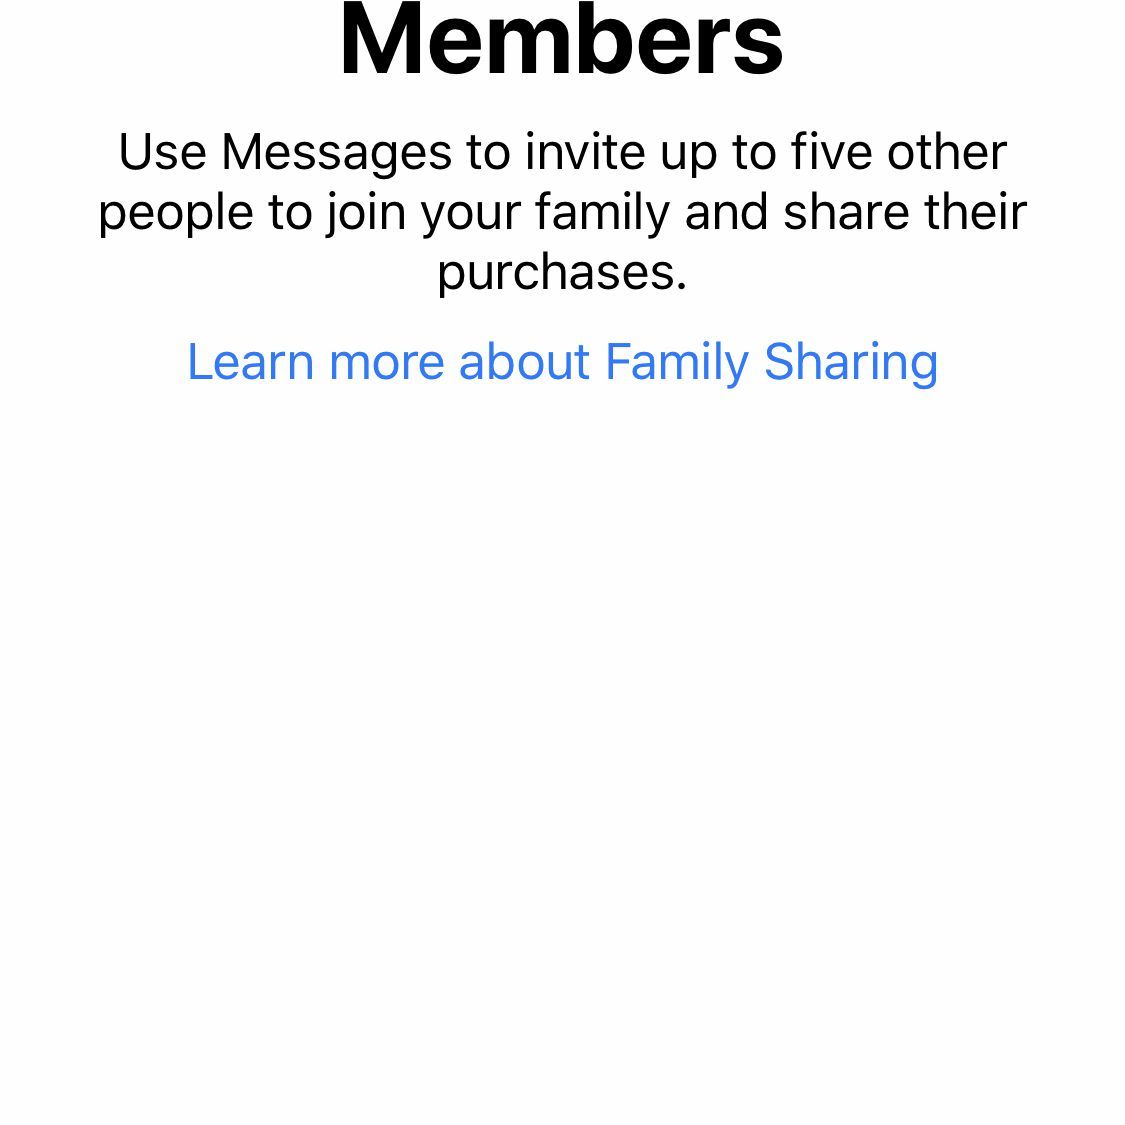 Снимок экрана приглашения участников в Family Sharing